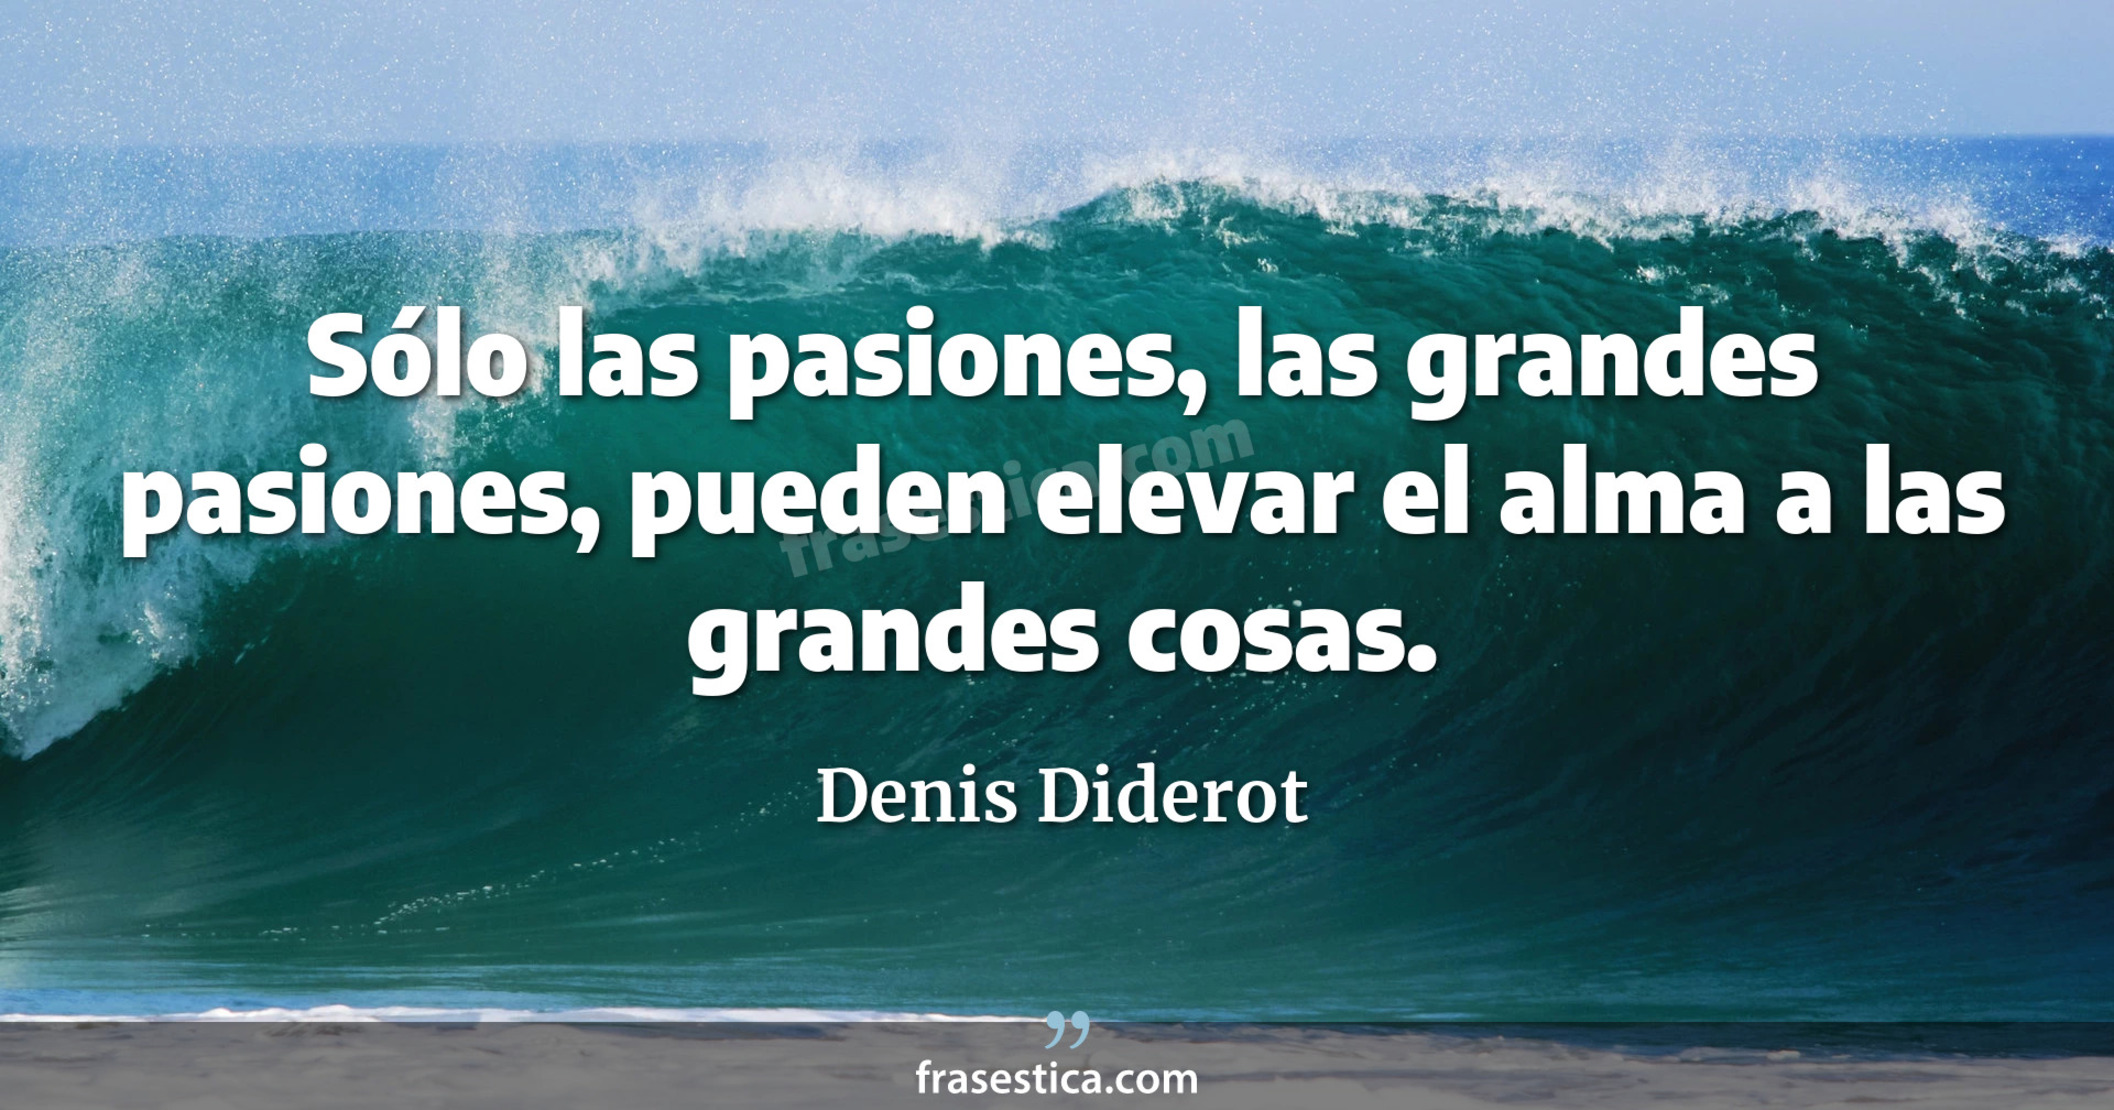 Sólo las pasiones, las grandes pasiones, pueden elevar el alma a las grandes cosas.  - Denis Diderot